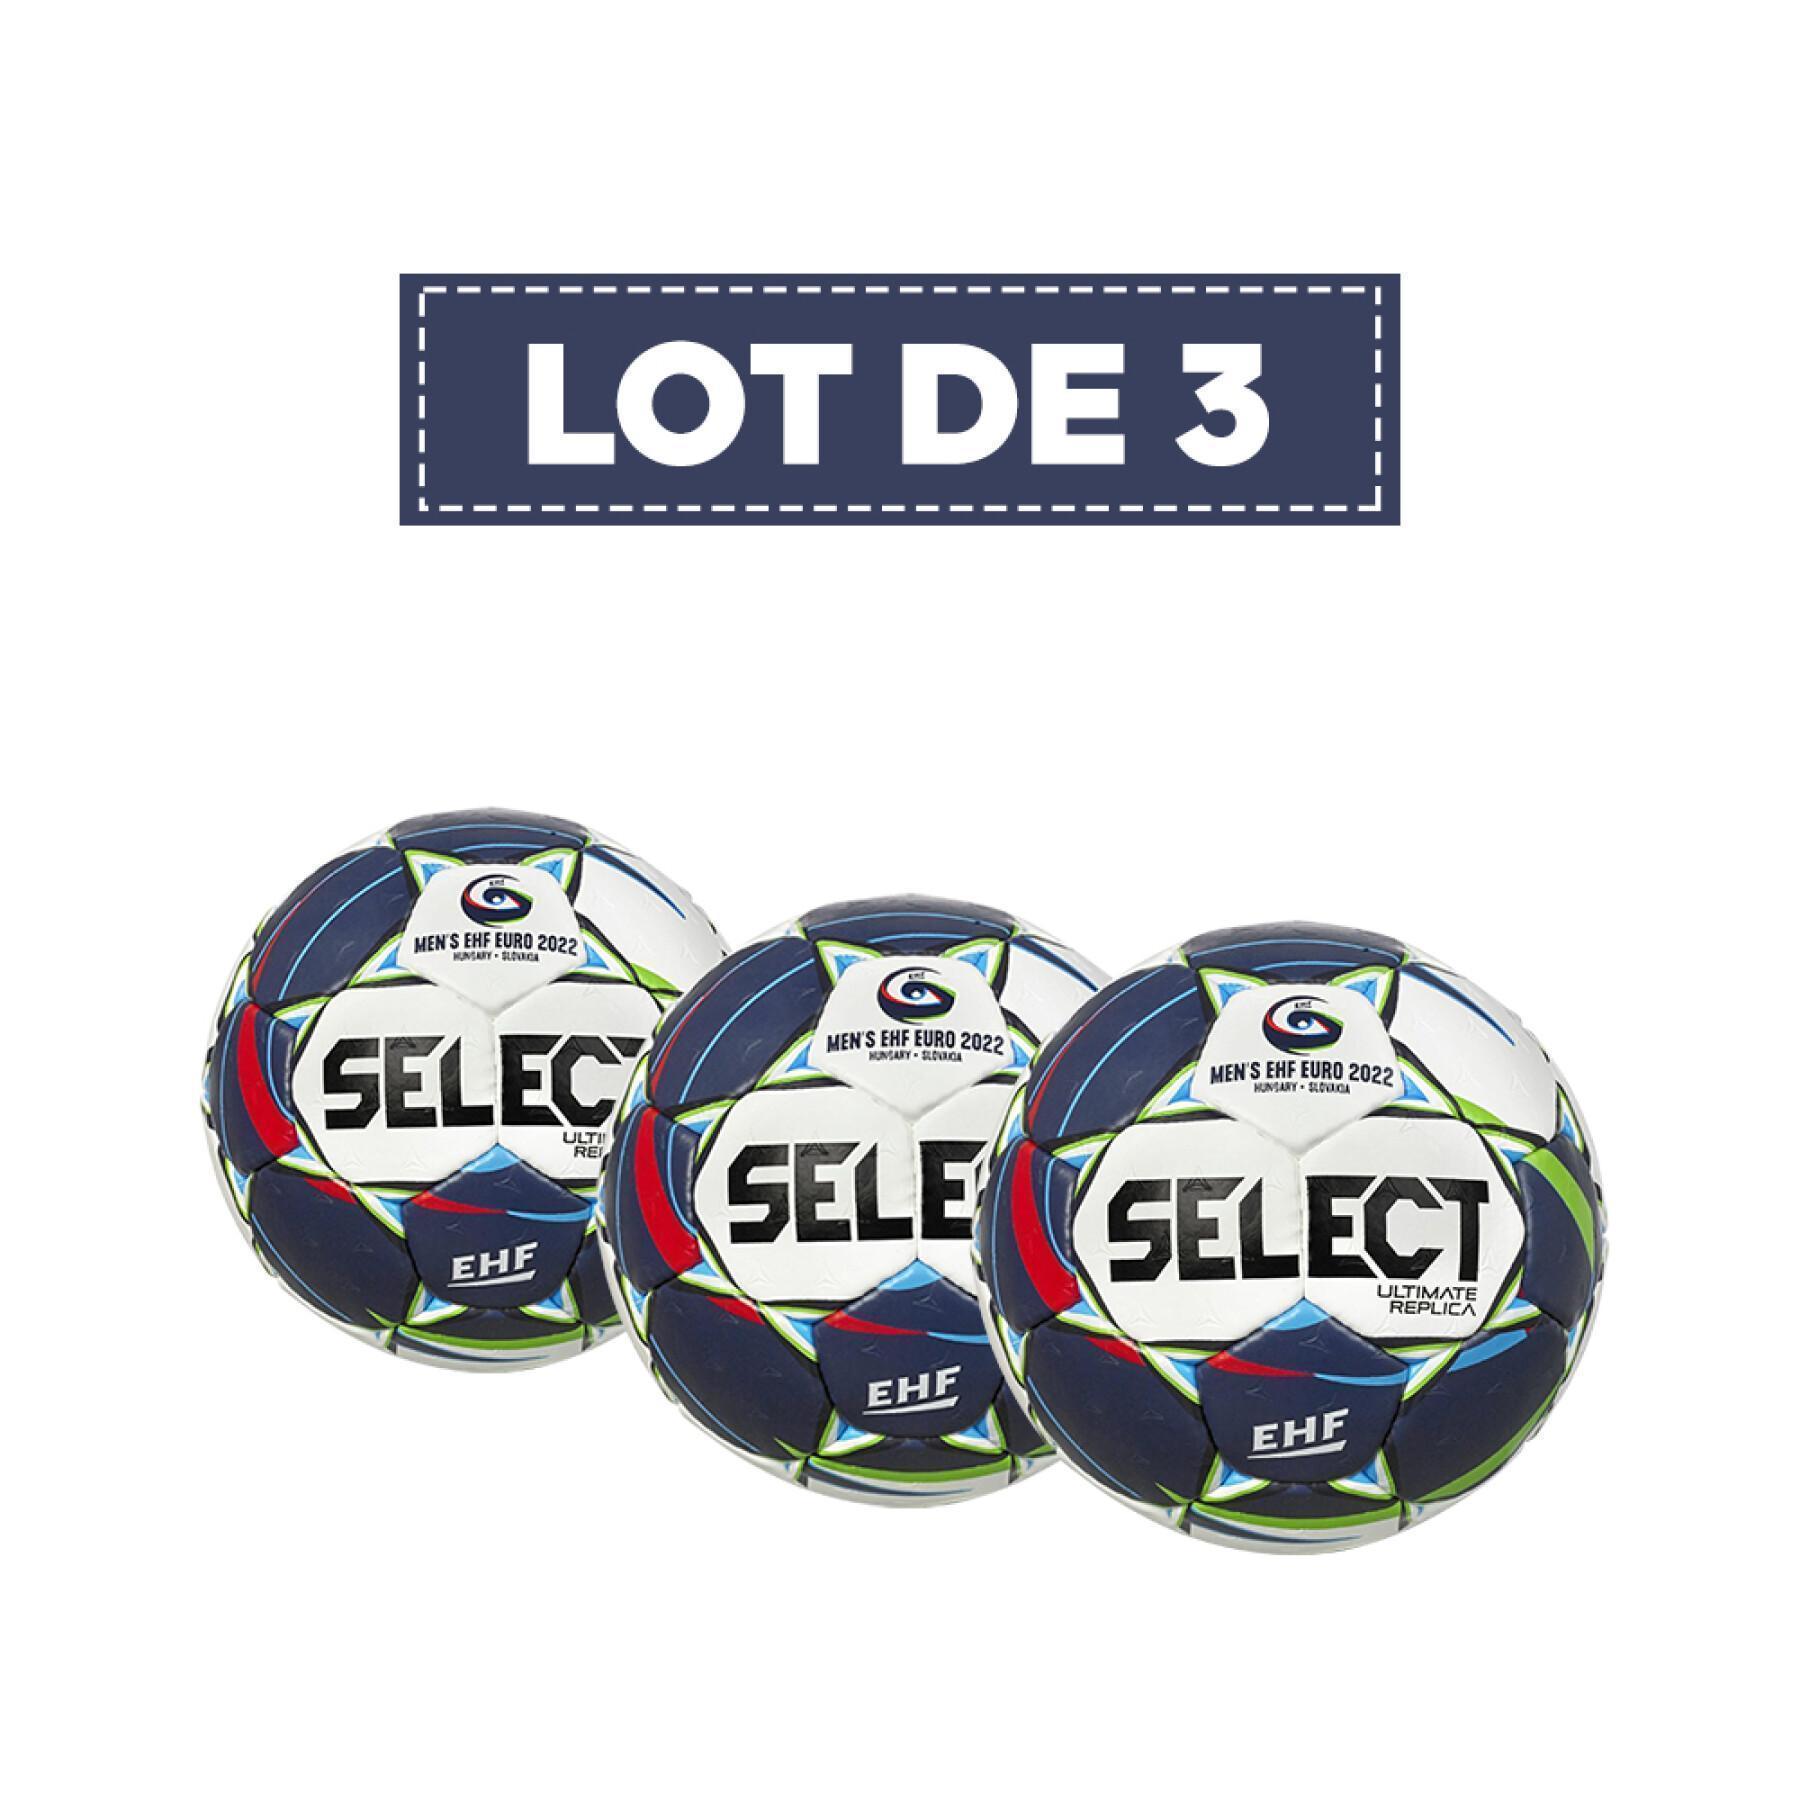 Conjunto de 3 balões Select Euro EHF 2022 Replica